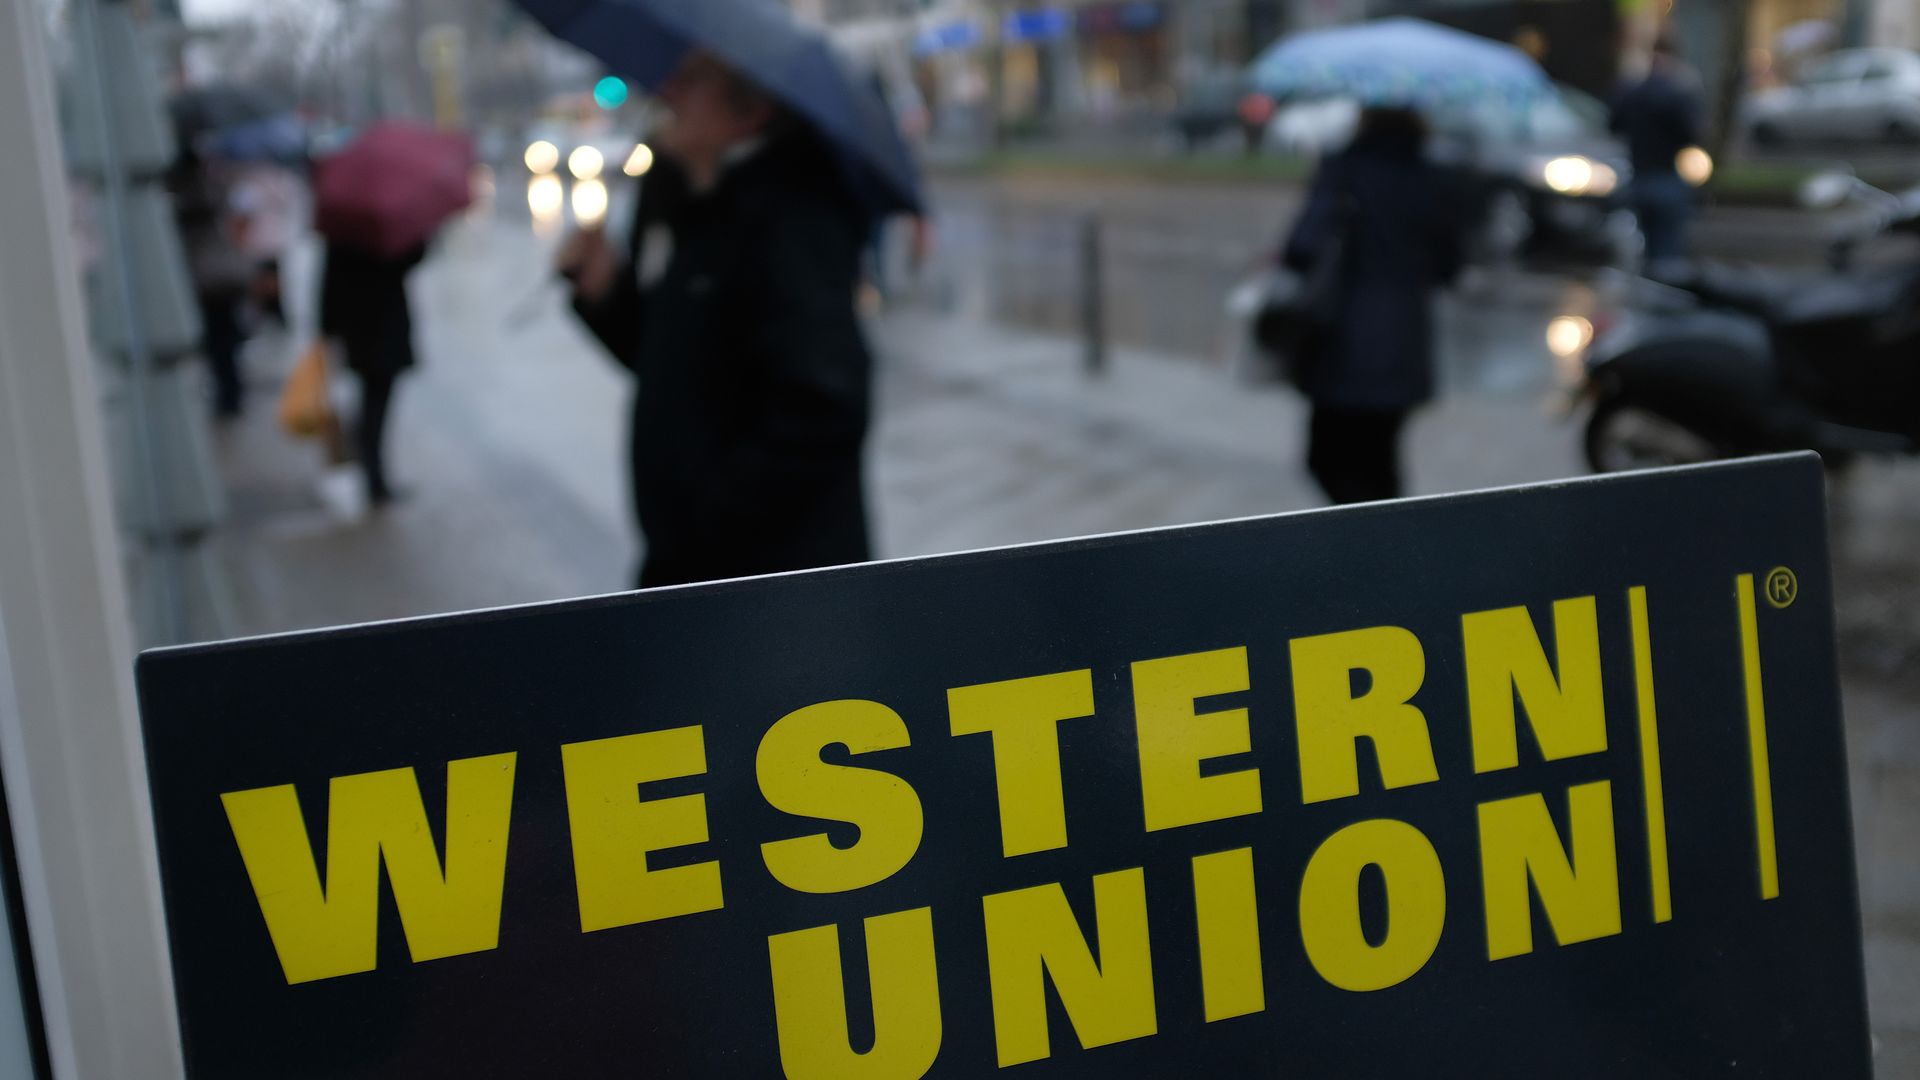 A Western Union advertisement in Berlin in January 2018.